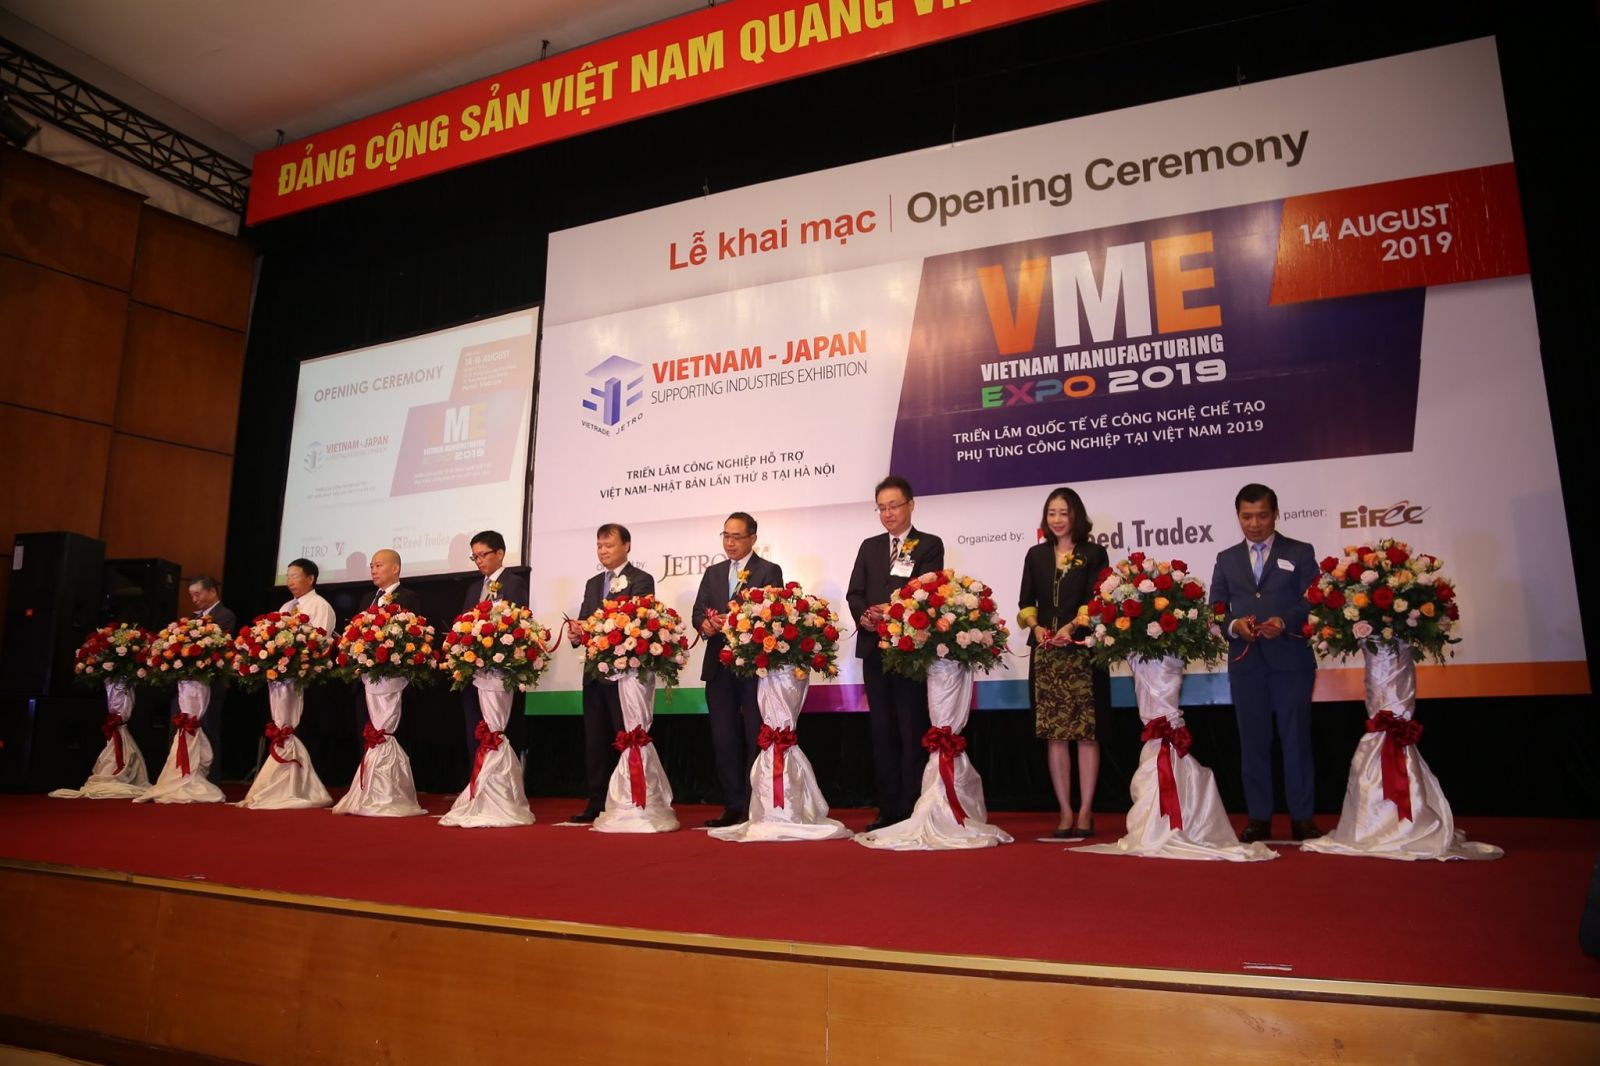 Triển lãm quốc tế Vietnam Manufacturing Expo - VME 2019